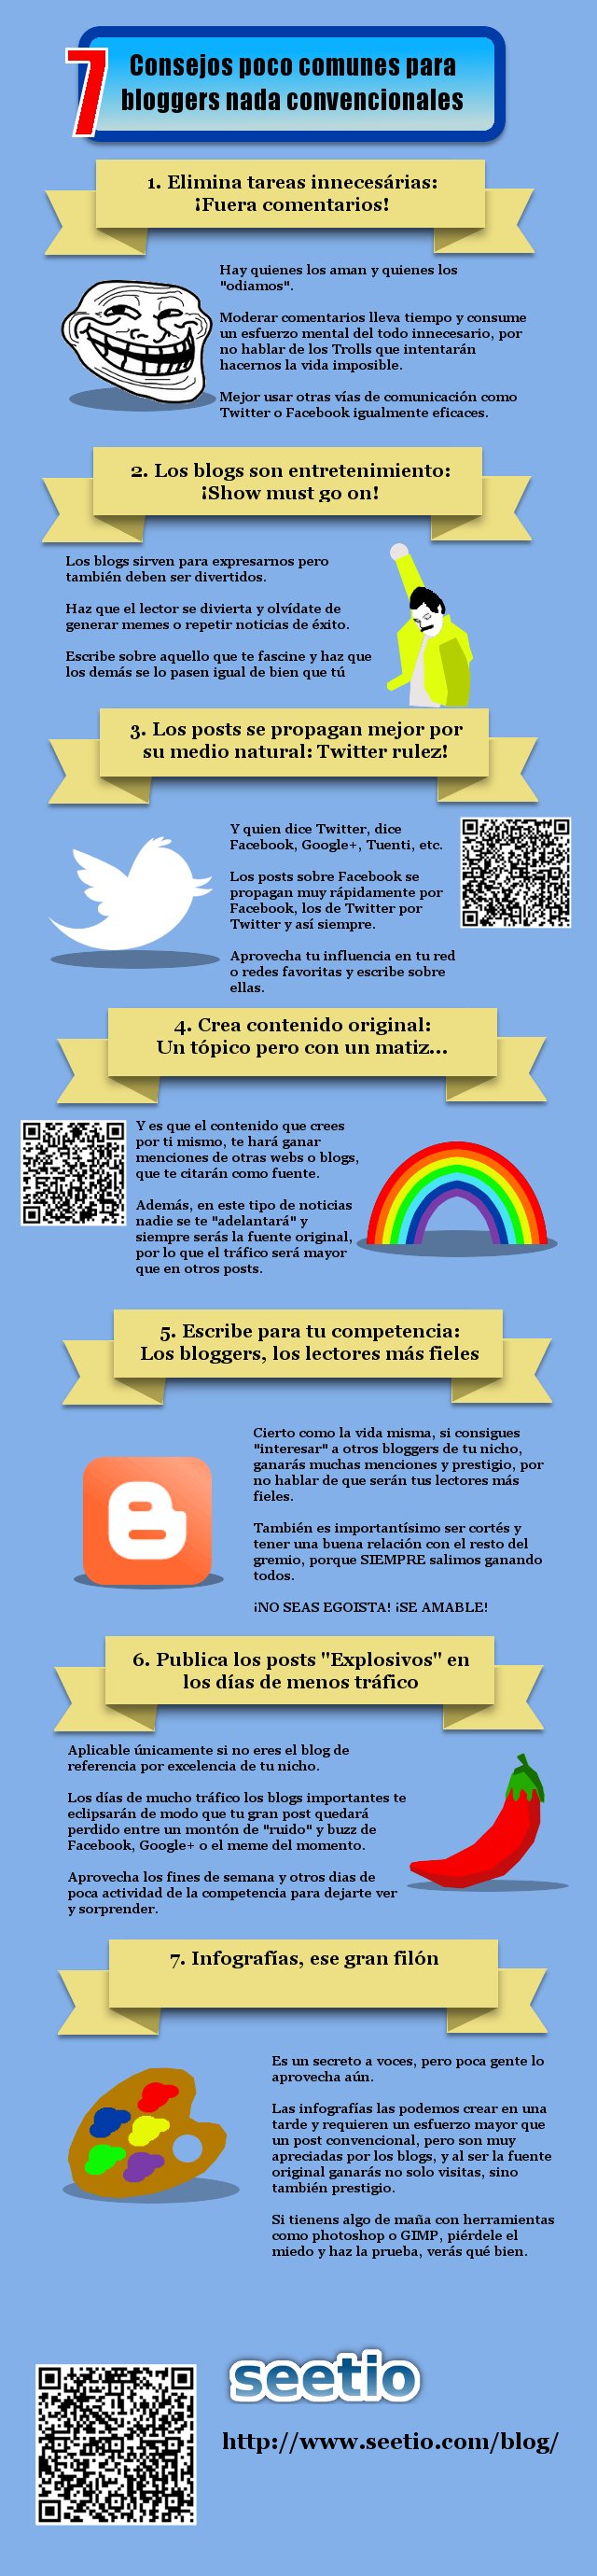 Consejos para bloggers desde una óptica distinta #Infografía en español 1